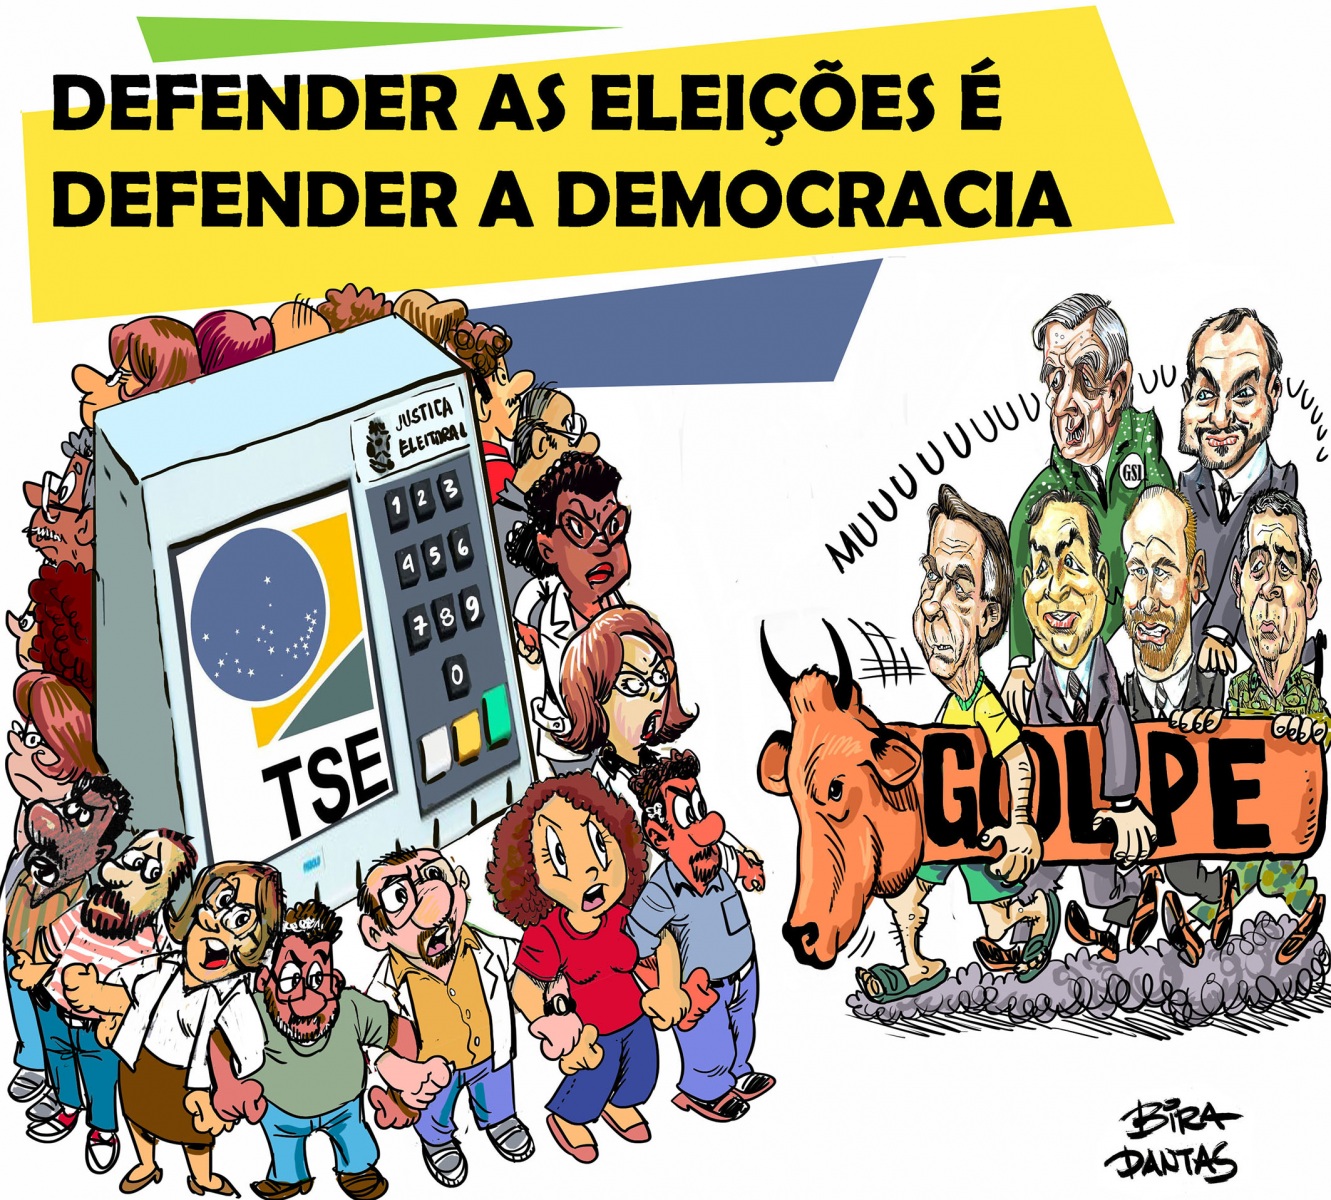 0-Defender-Democracia-cor